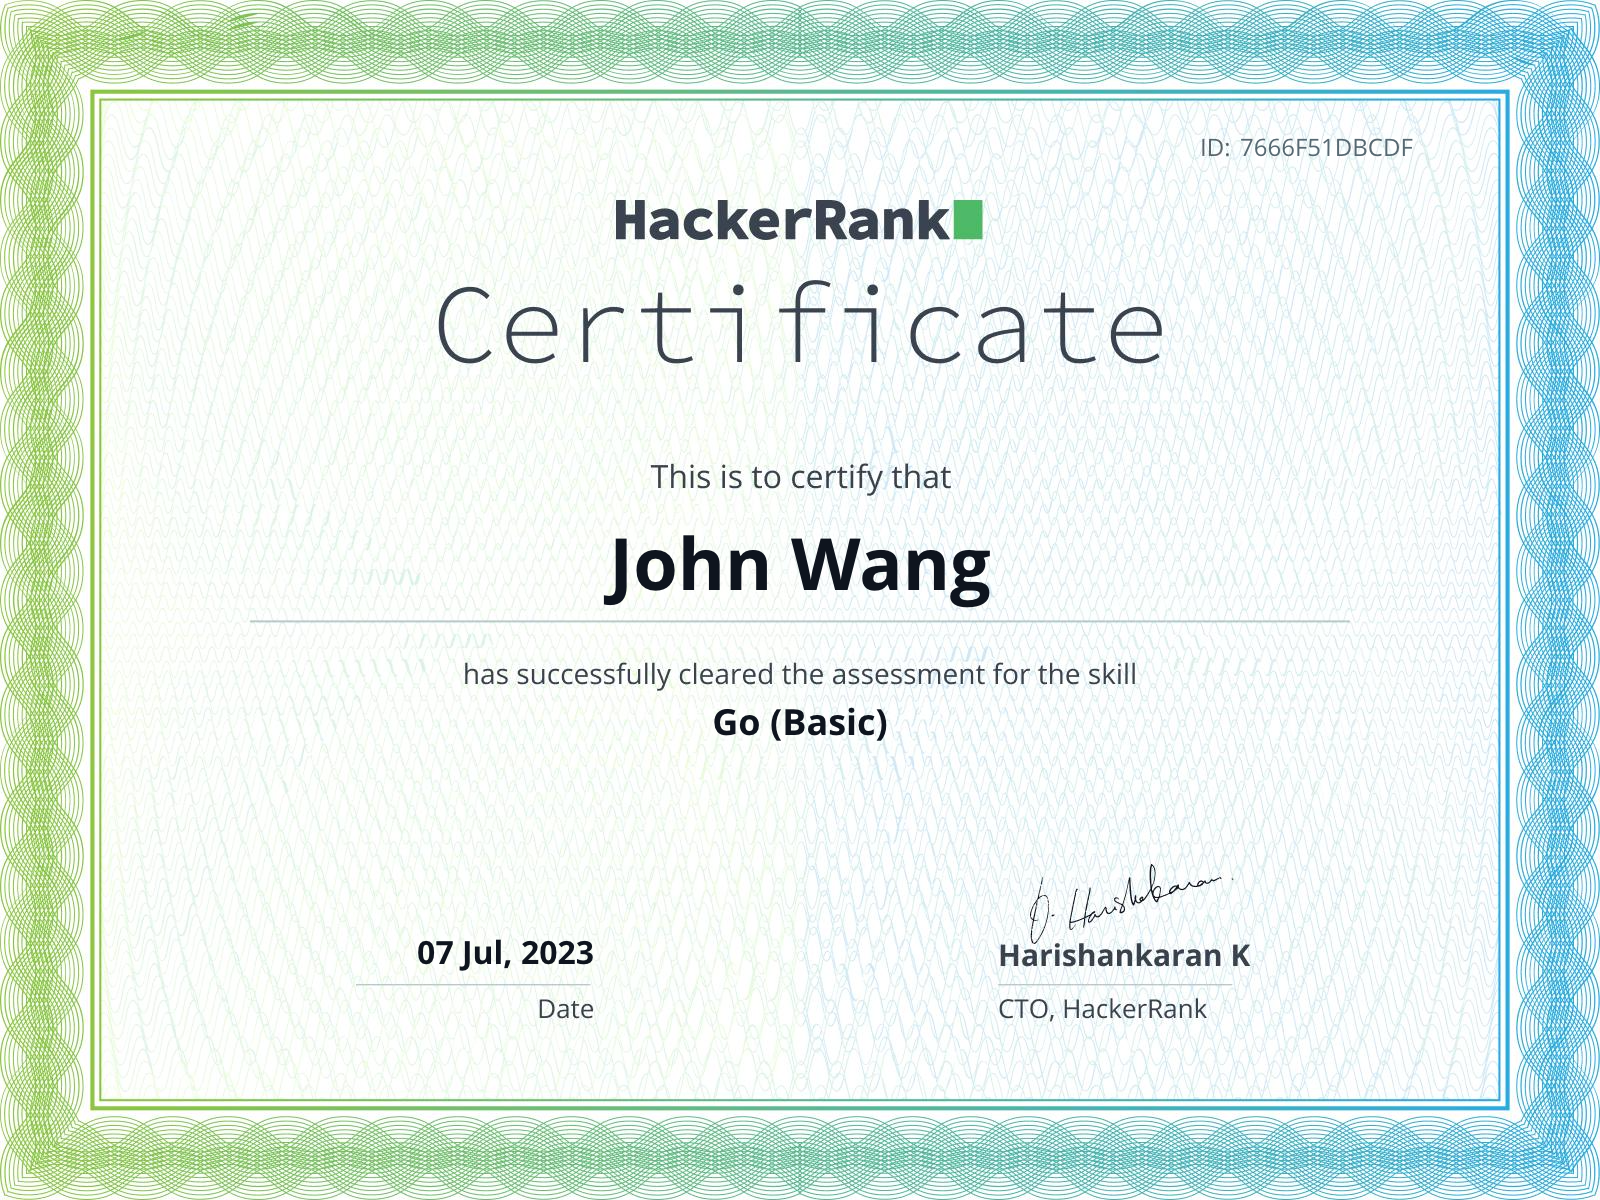 John's Go (Basic) from HackerRank